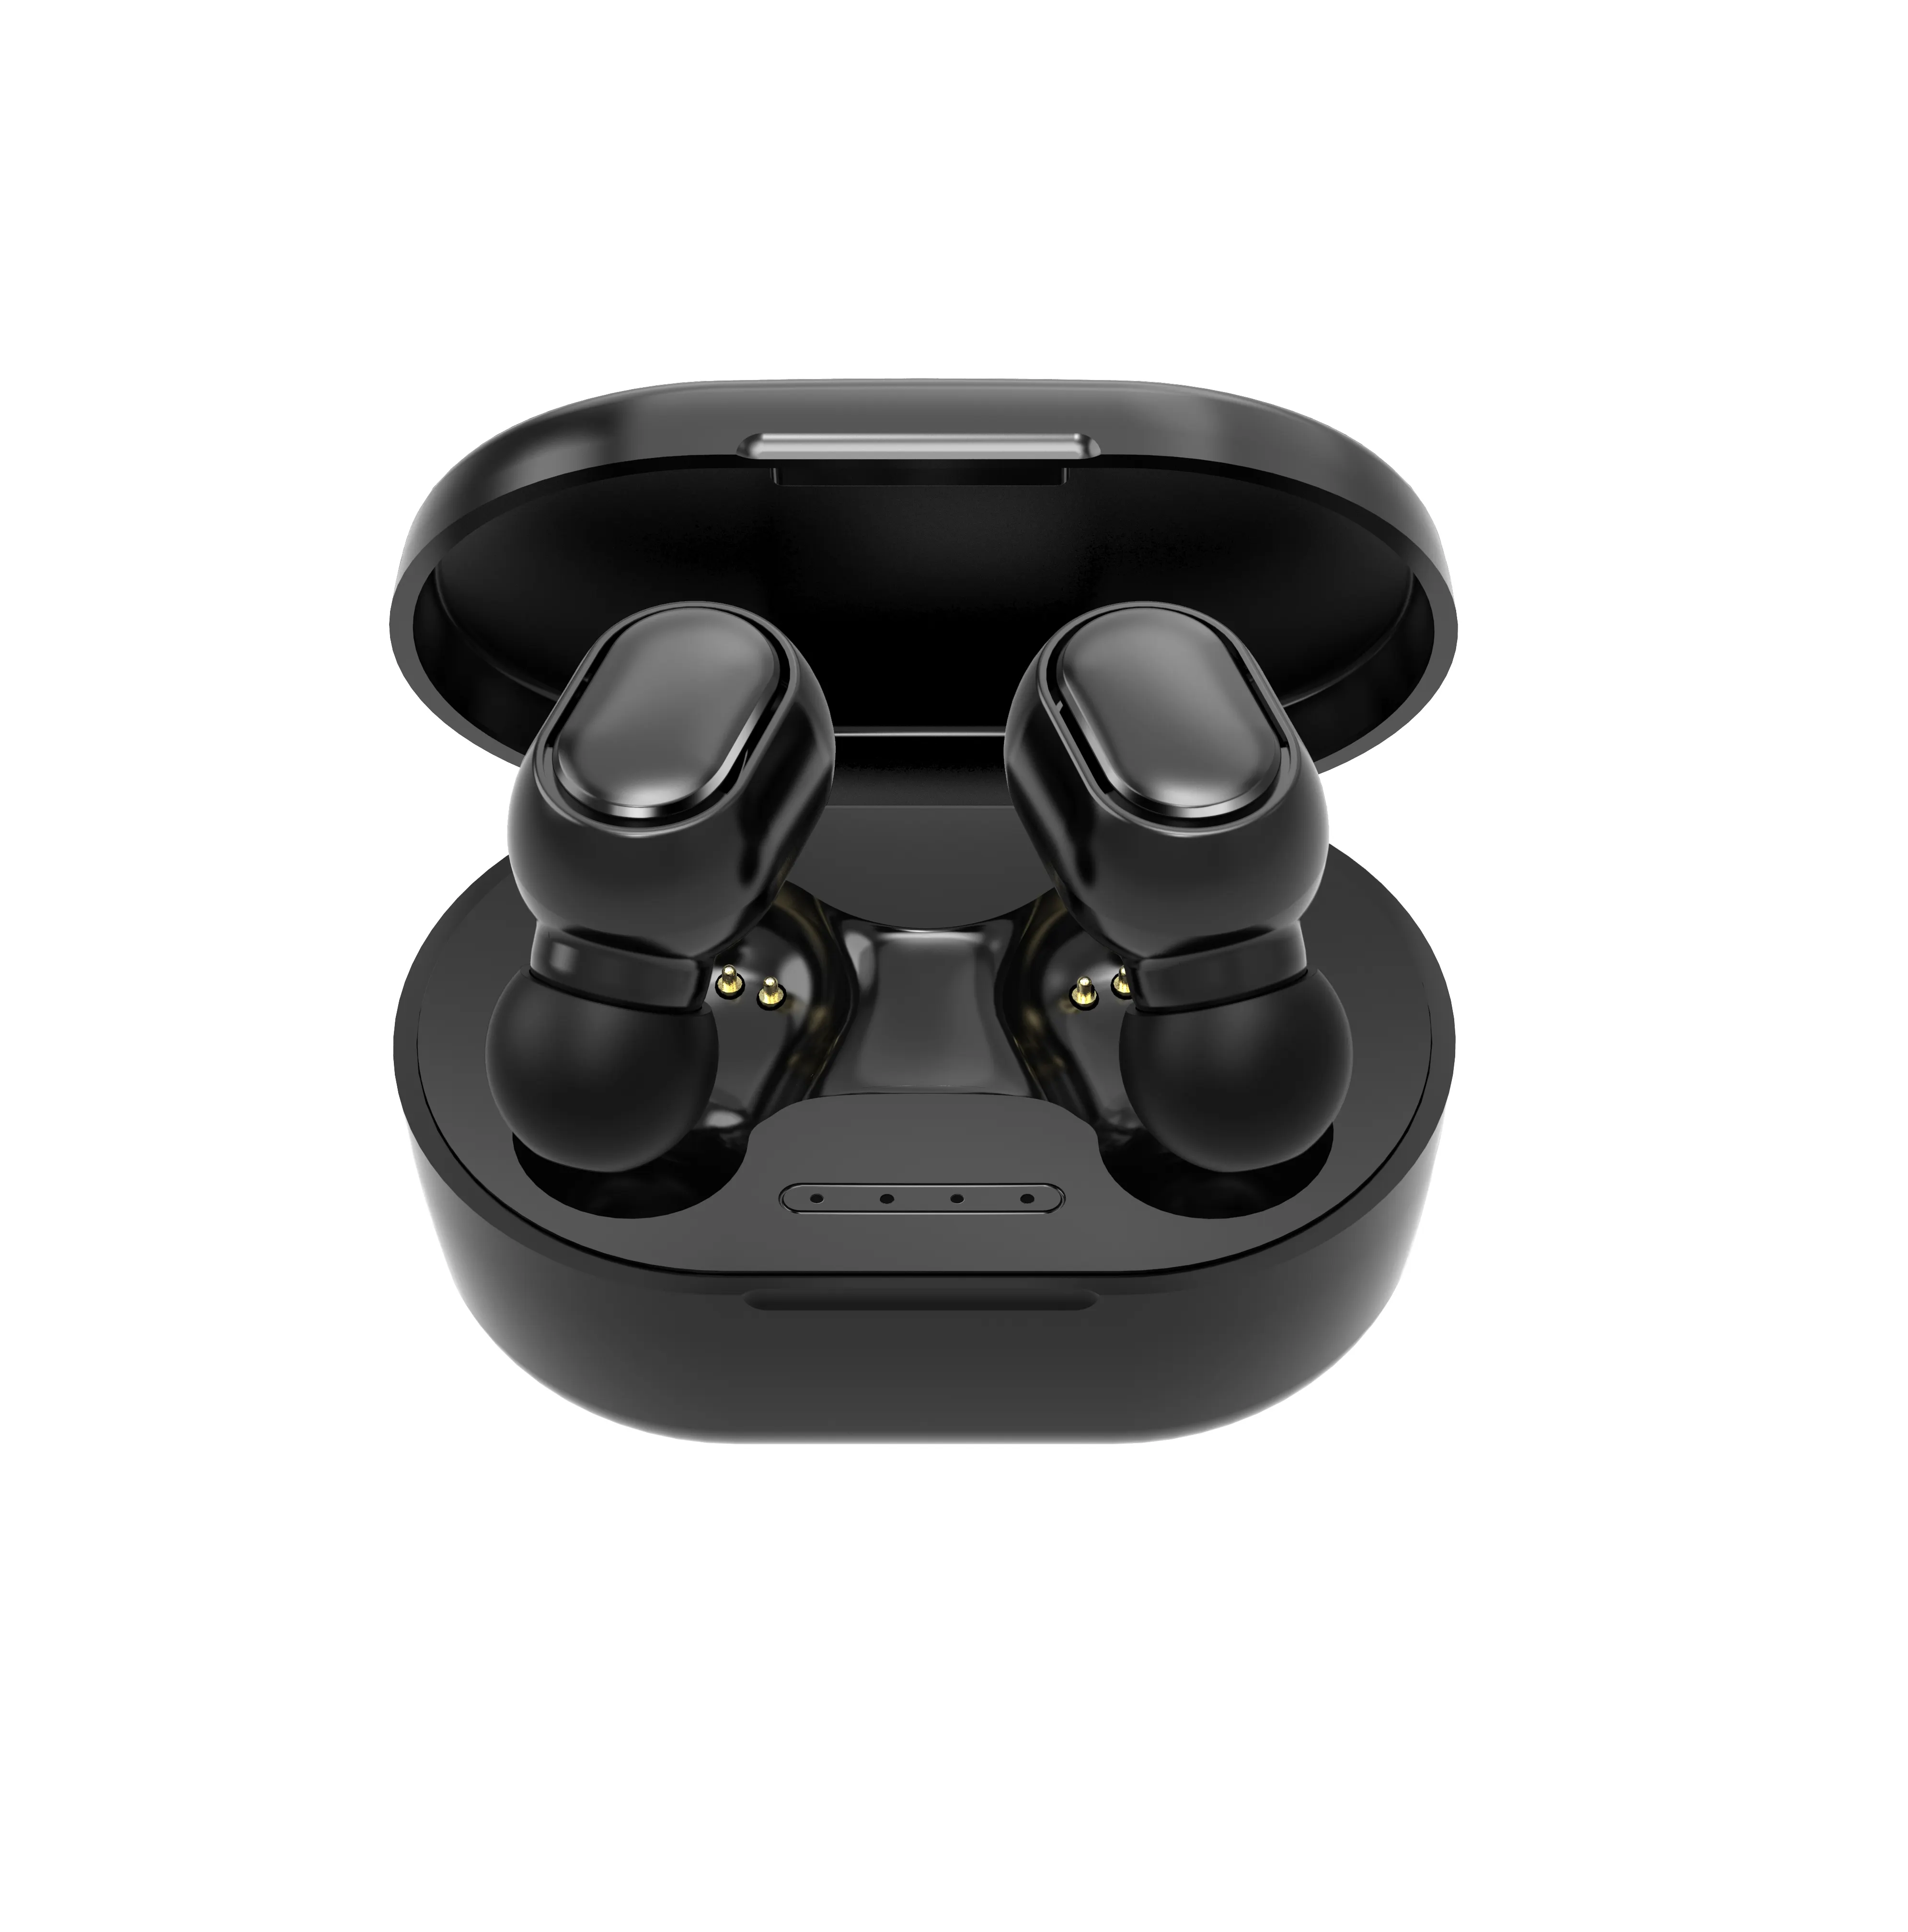 Miniauriculares TWS inalámbricos por Bluetooth V5.0, Auriculares deportivos auténticos estéreo, los más baratos